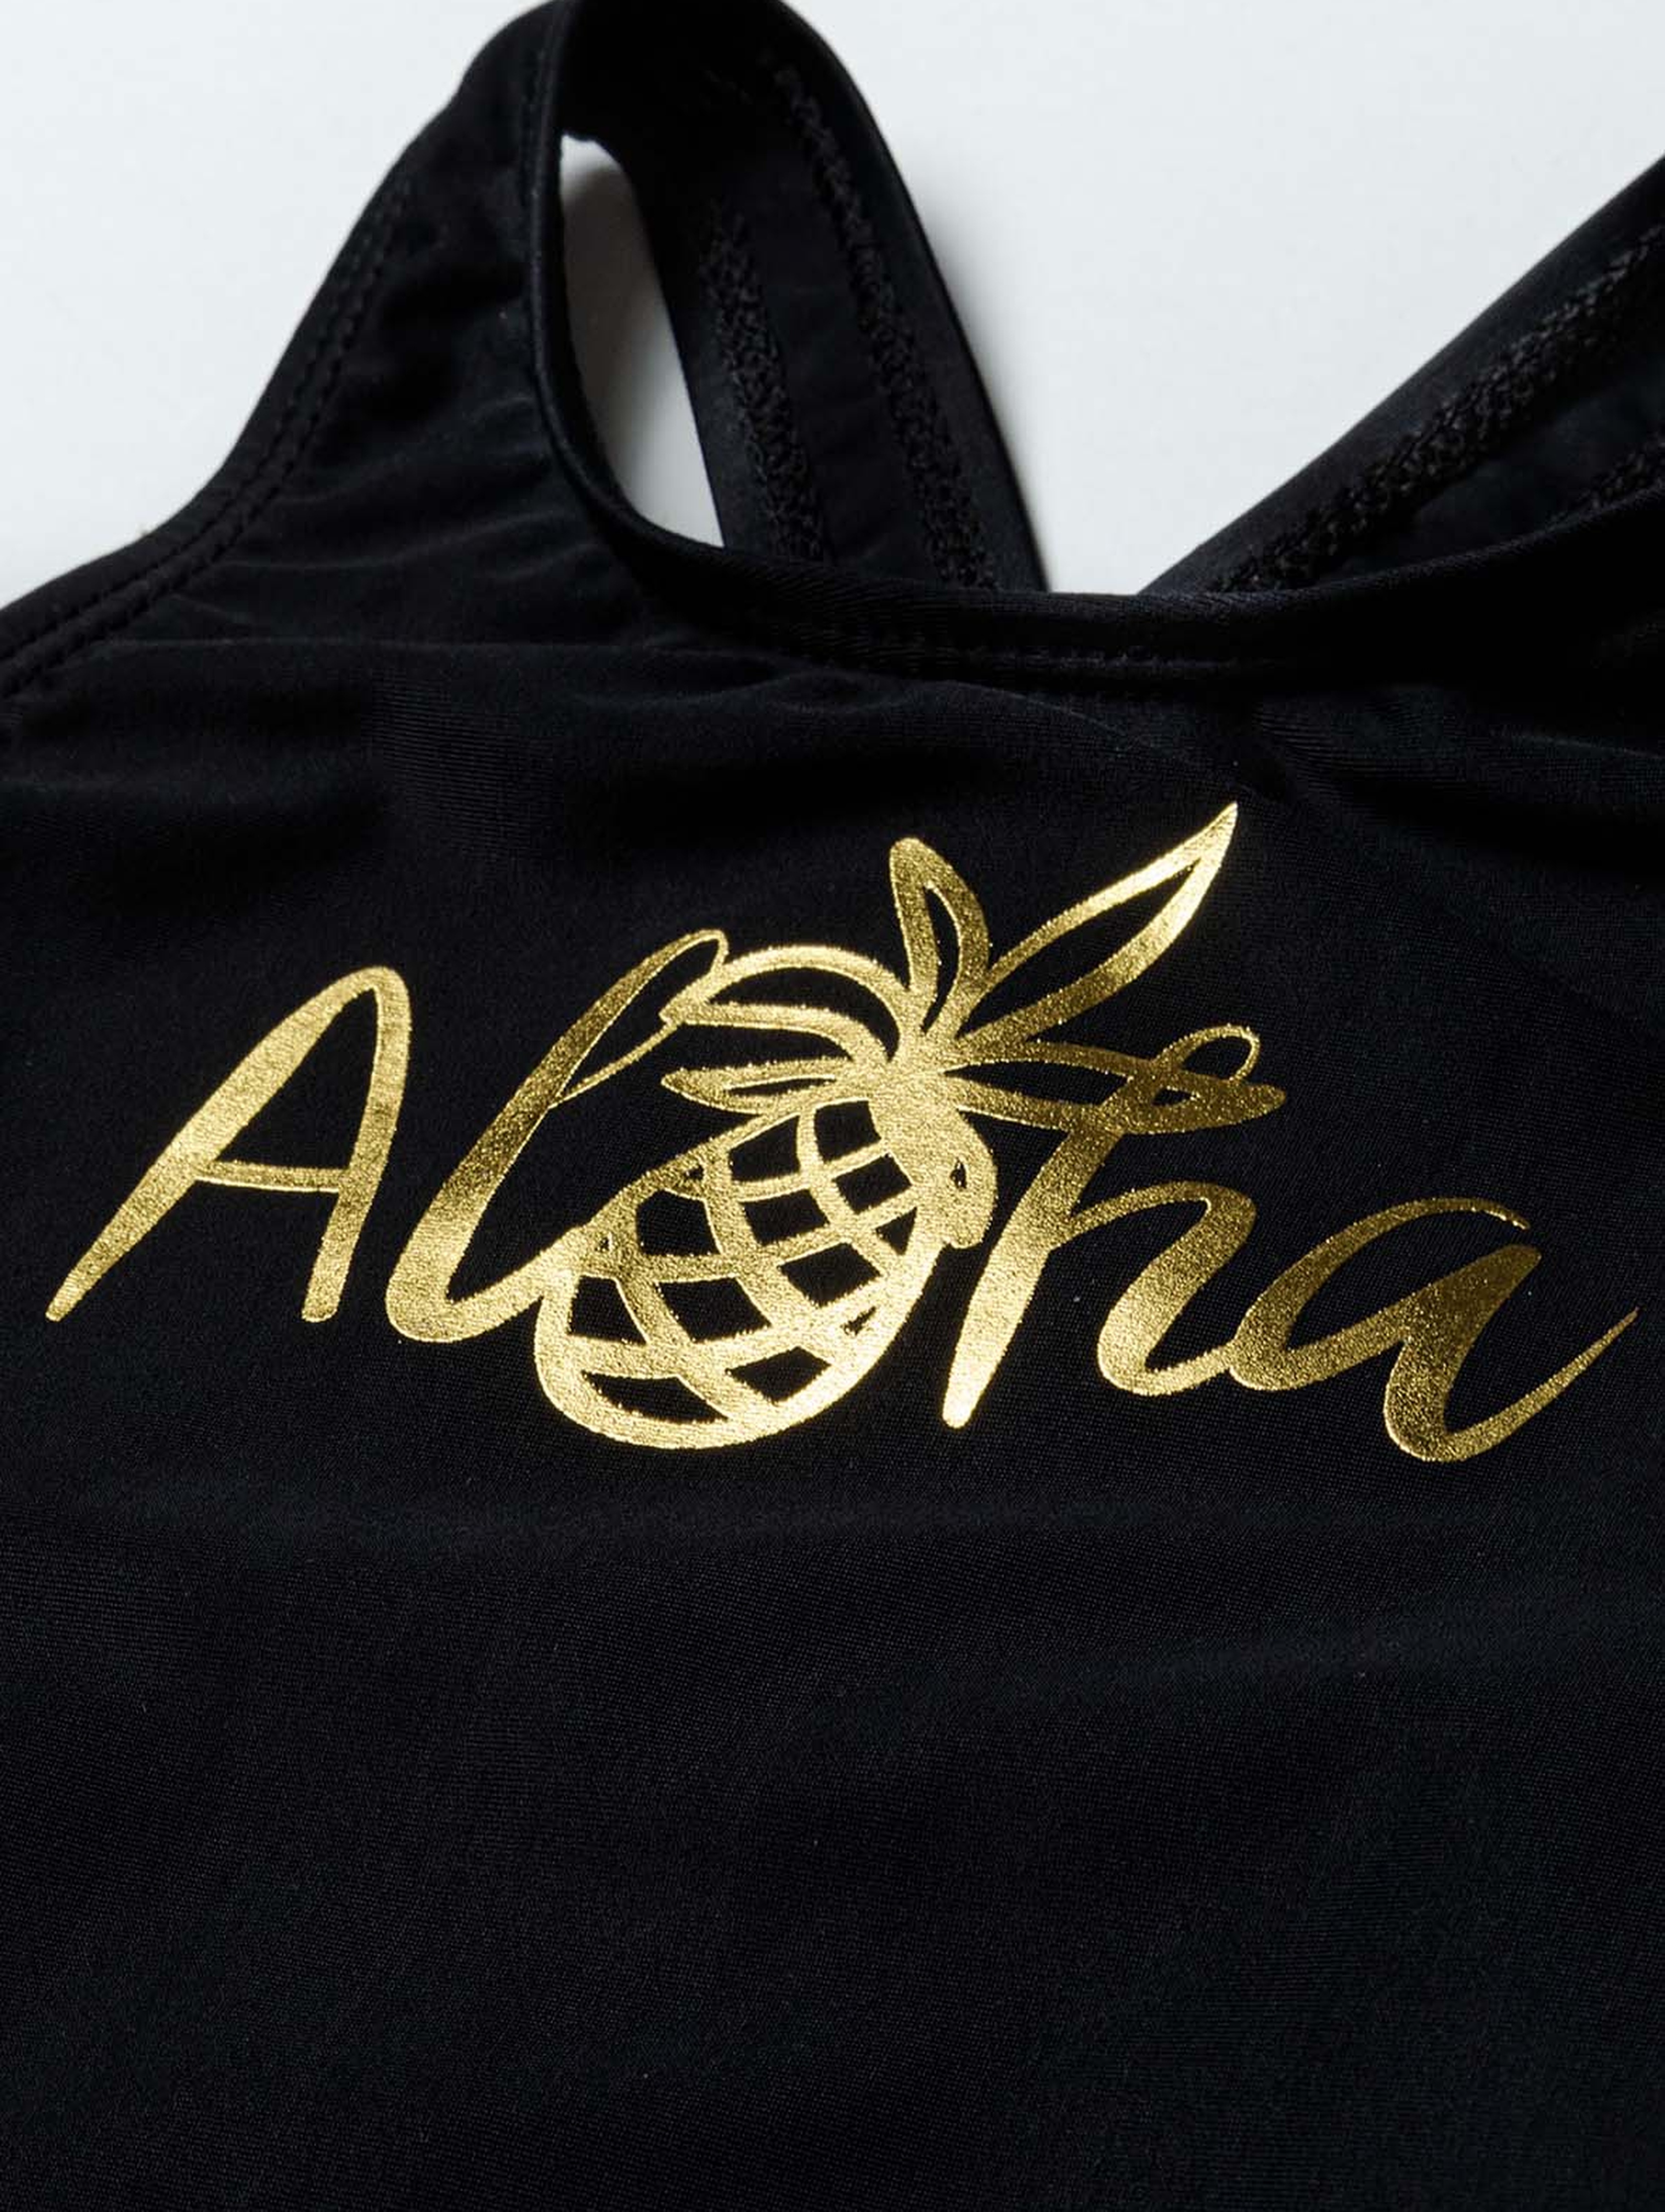 Czarny jednoczęściowy kostium kąpielowy- Aloha